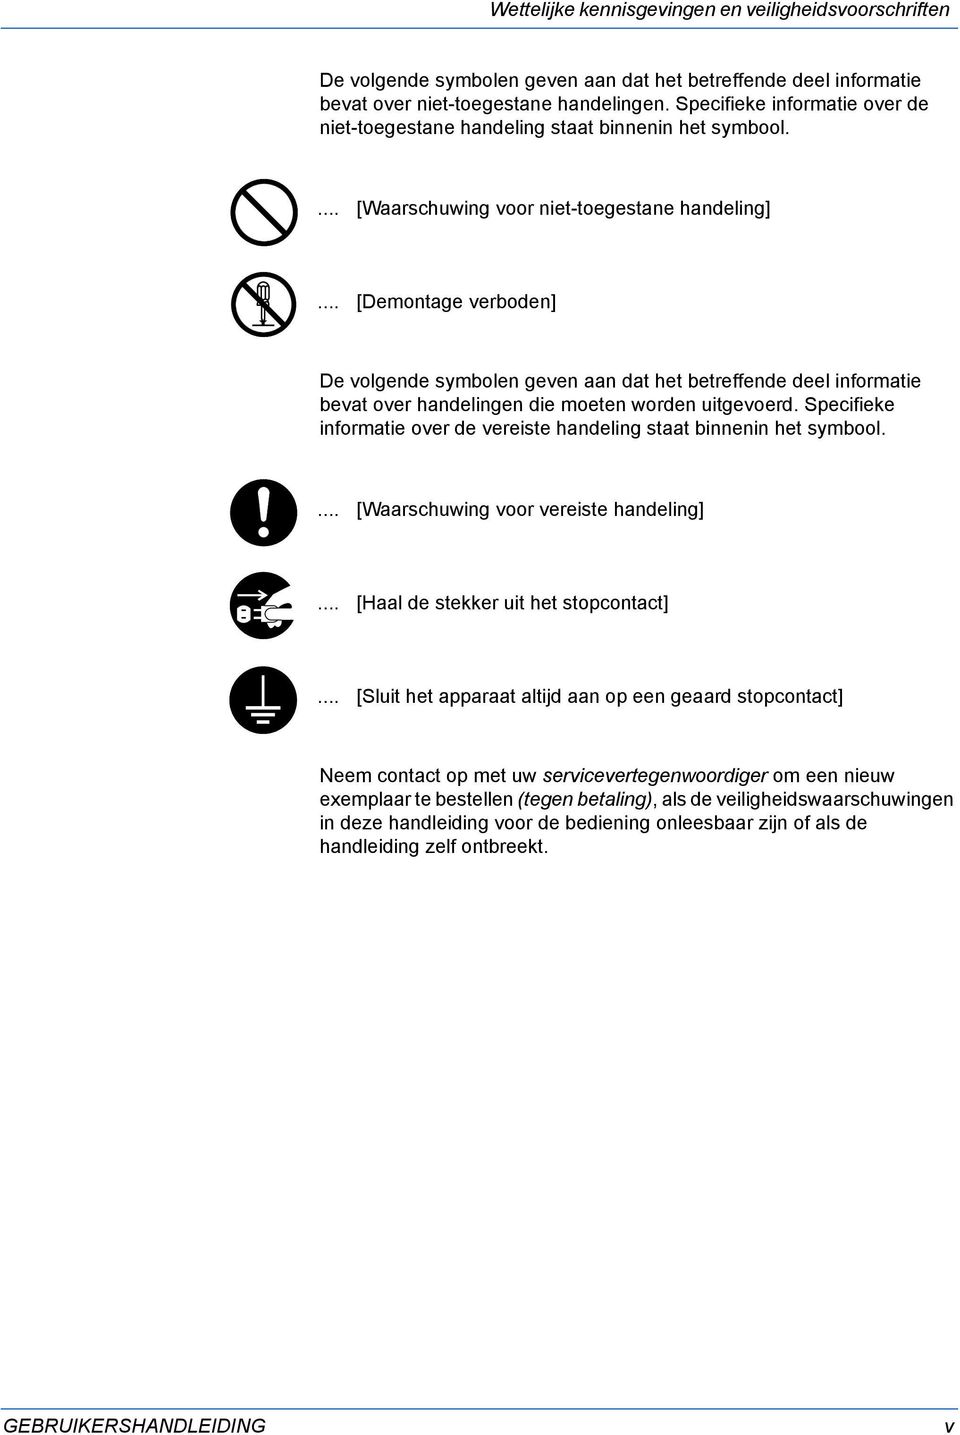 .. [Demontage verboden] De volgende symbolen geven aan dat het betreffende deel informatie bevat over handelingen die moeten worden uitgevoerd.